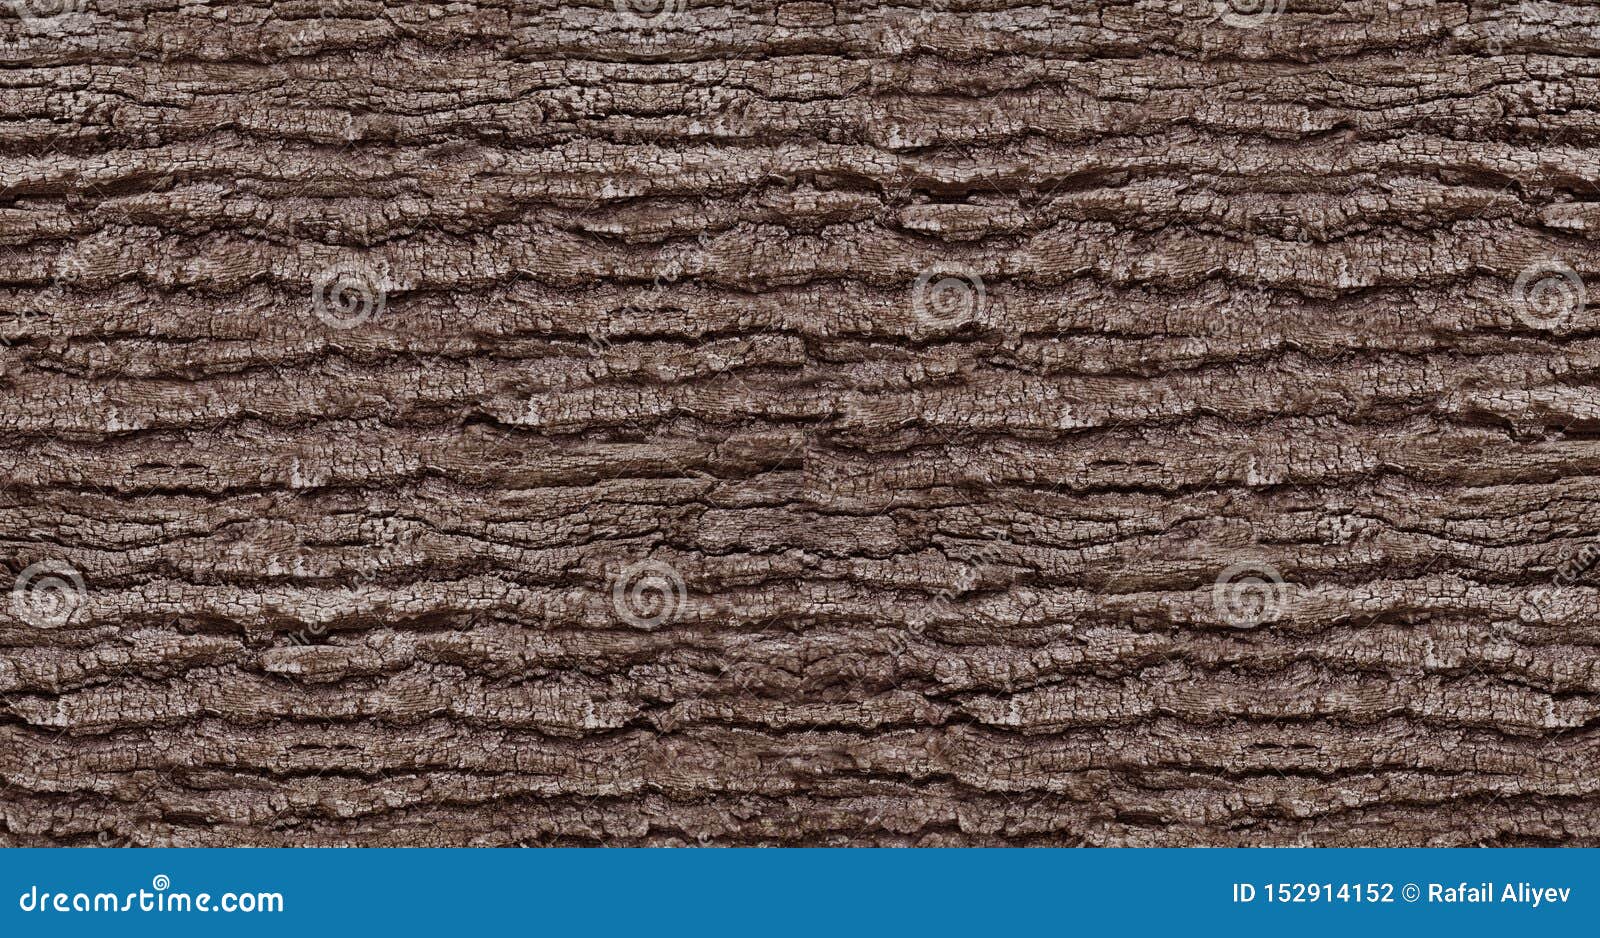 natural tree bark texture